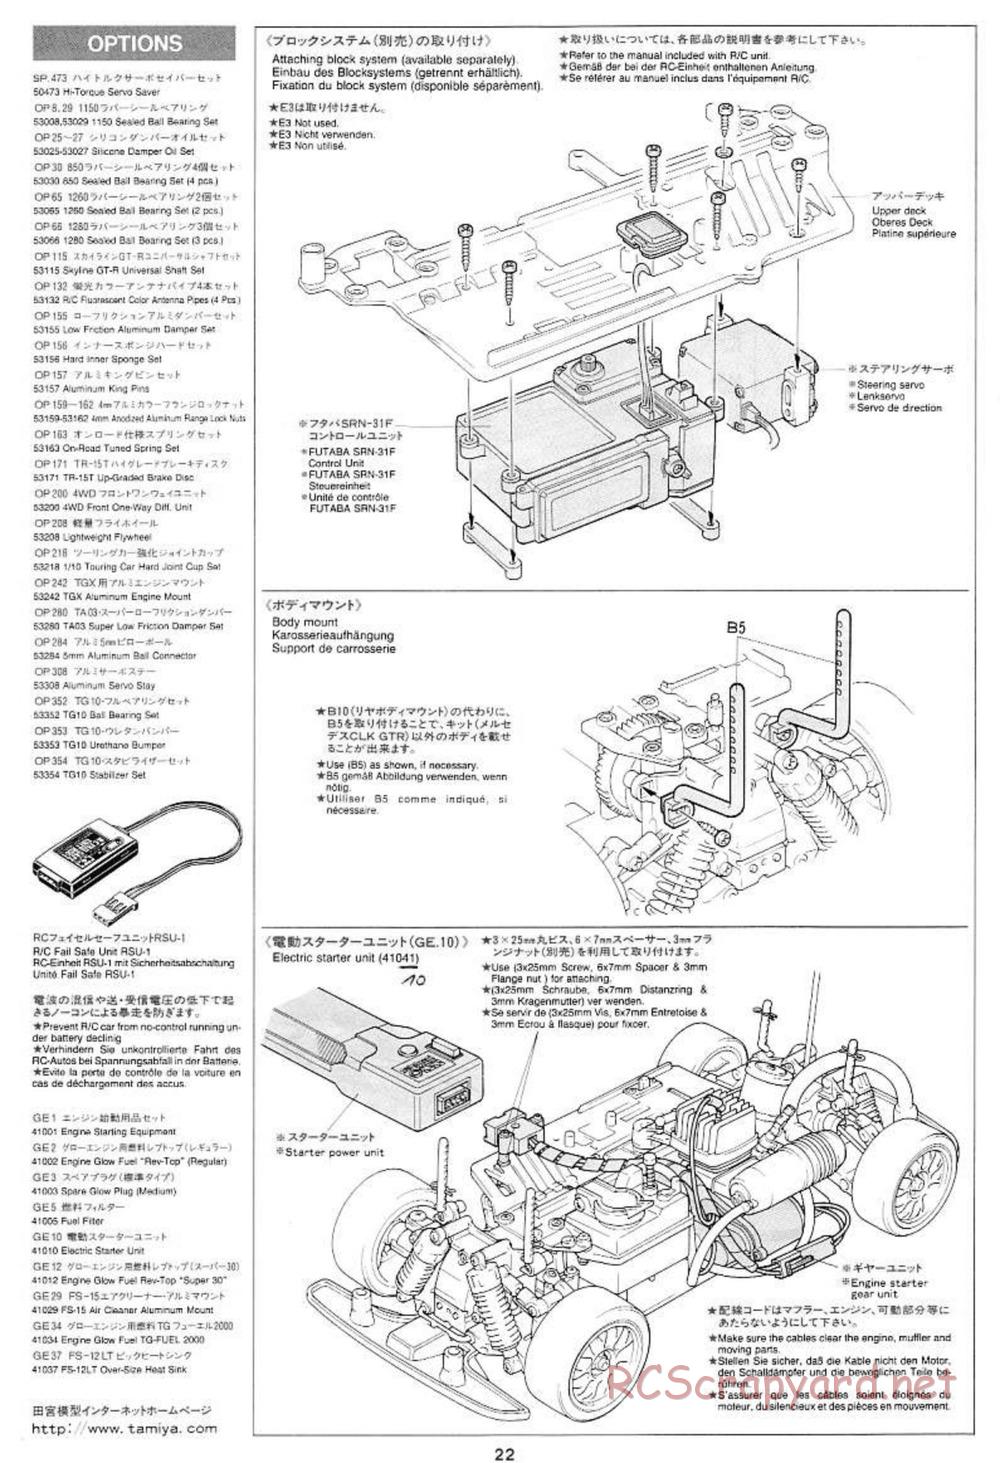 Tamiya - Mercedes CLK GTR Team Sportswear - TG10 Mk.1 Chassis - Manual - Page 22